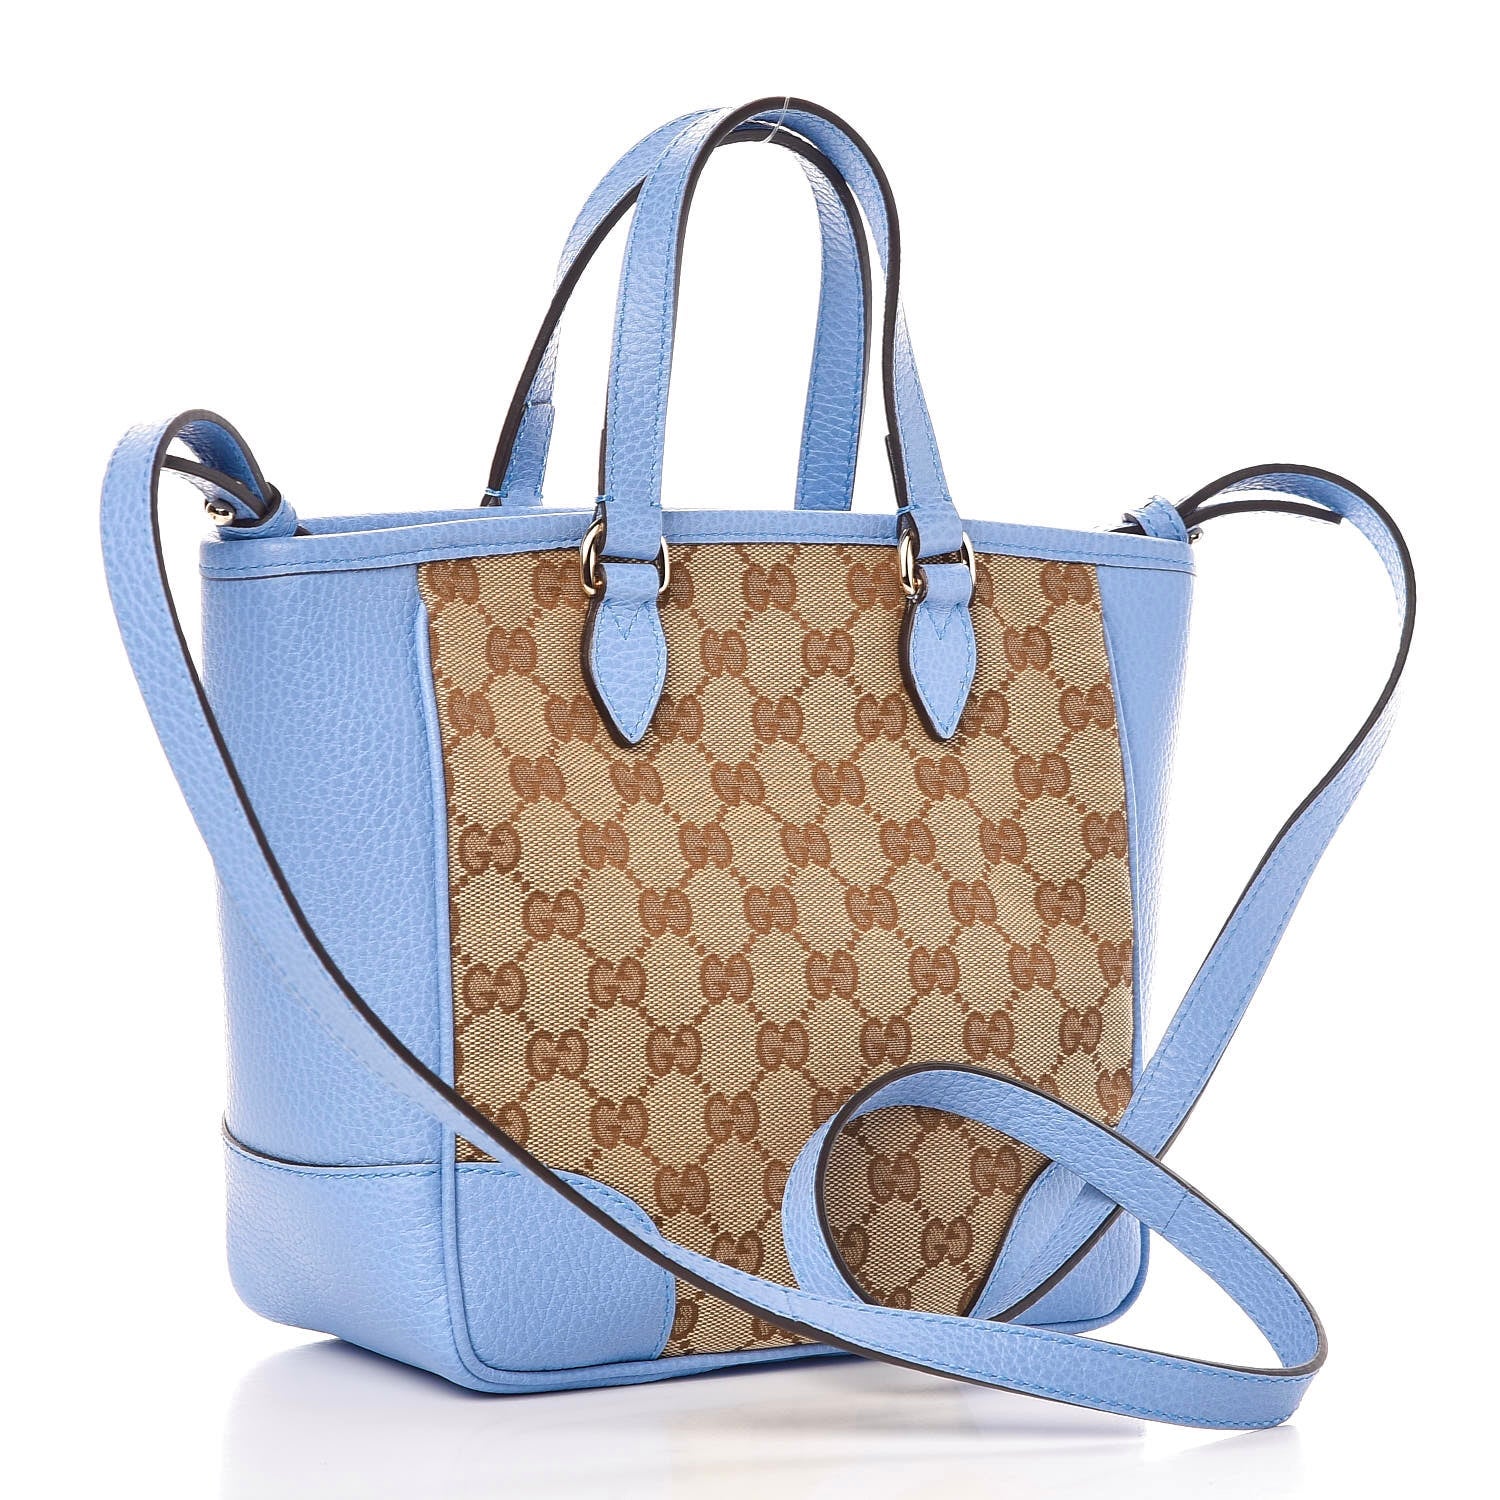 Totes bags Gucci - Bree Original GG canvas handle bag